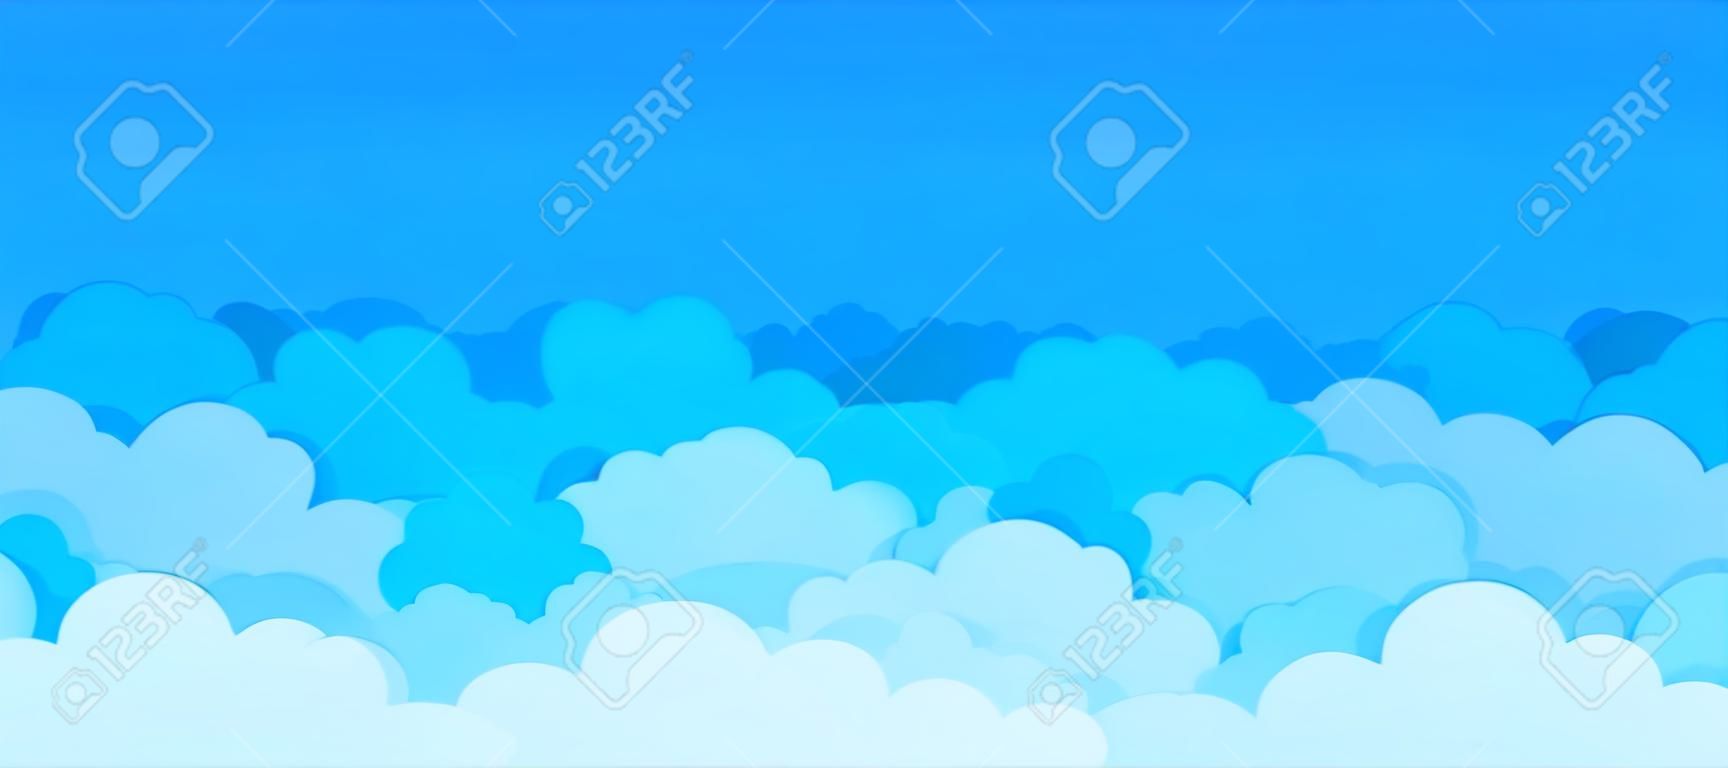 Fondo plano de la nube. Dibujos animados de cielo azul patrón abstracto marco nublado escena de cartel de verano nublado. Papel tapiz gráfico de nubes vectoriales